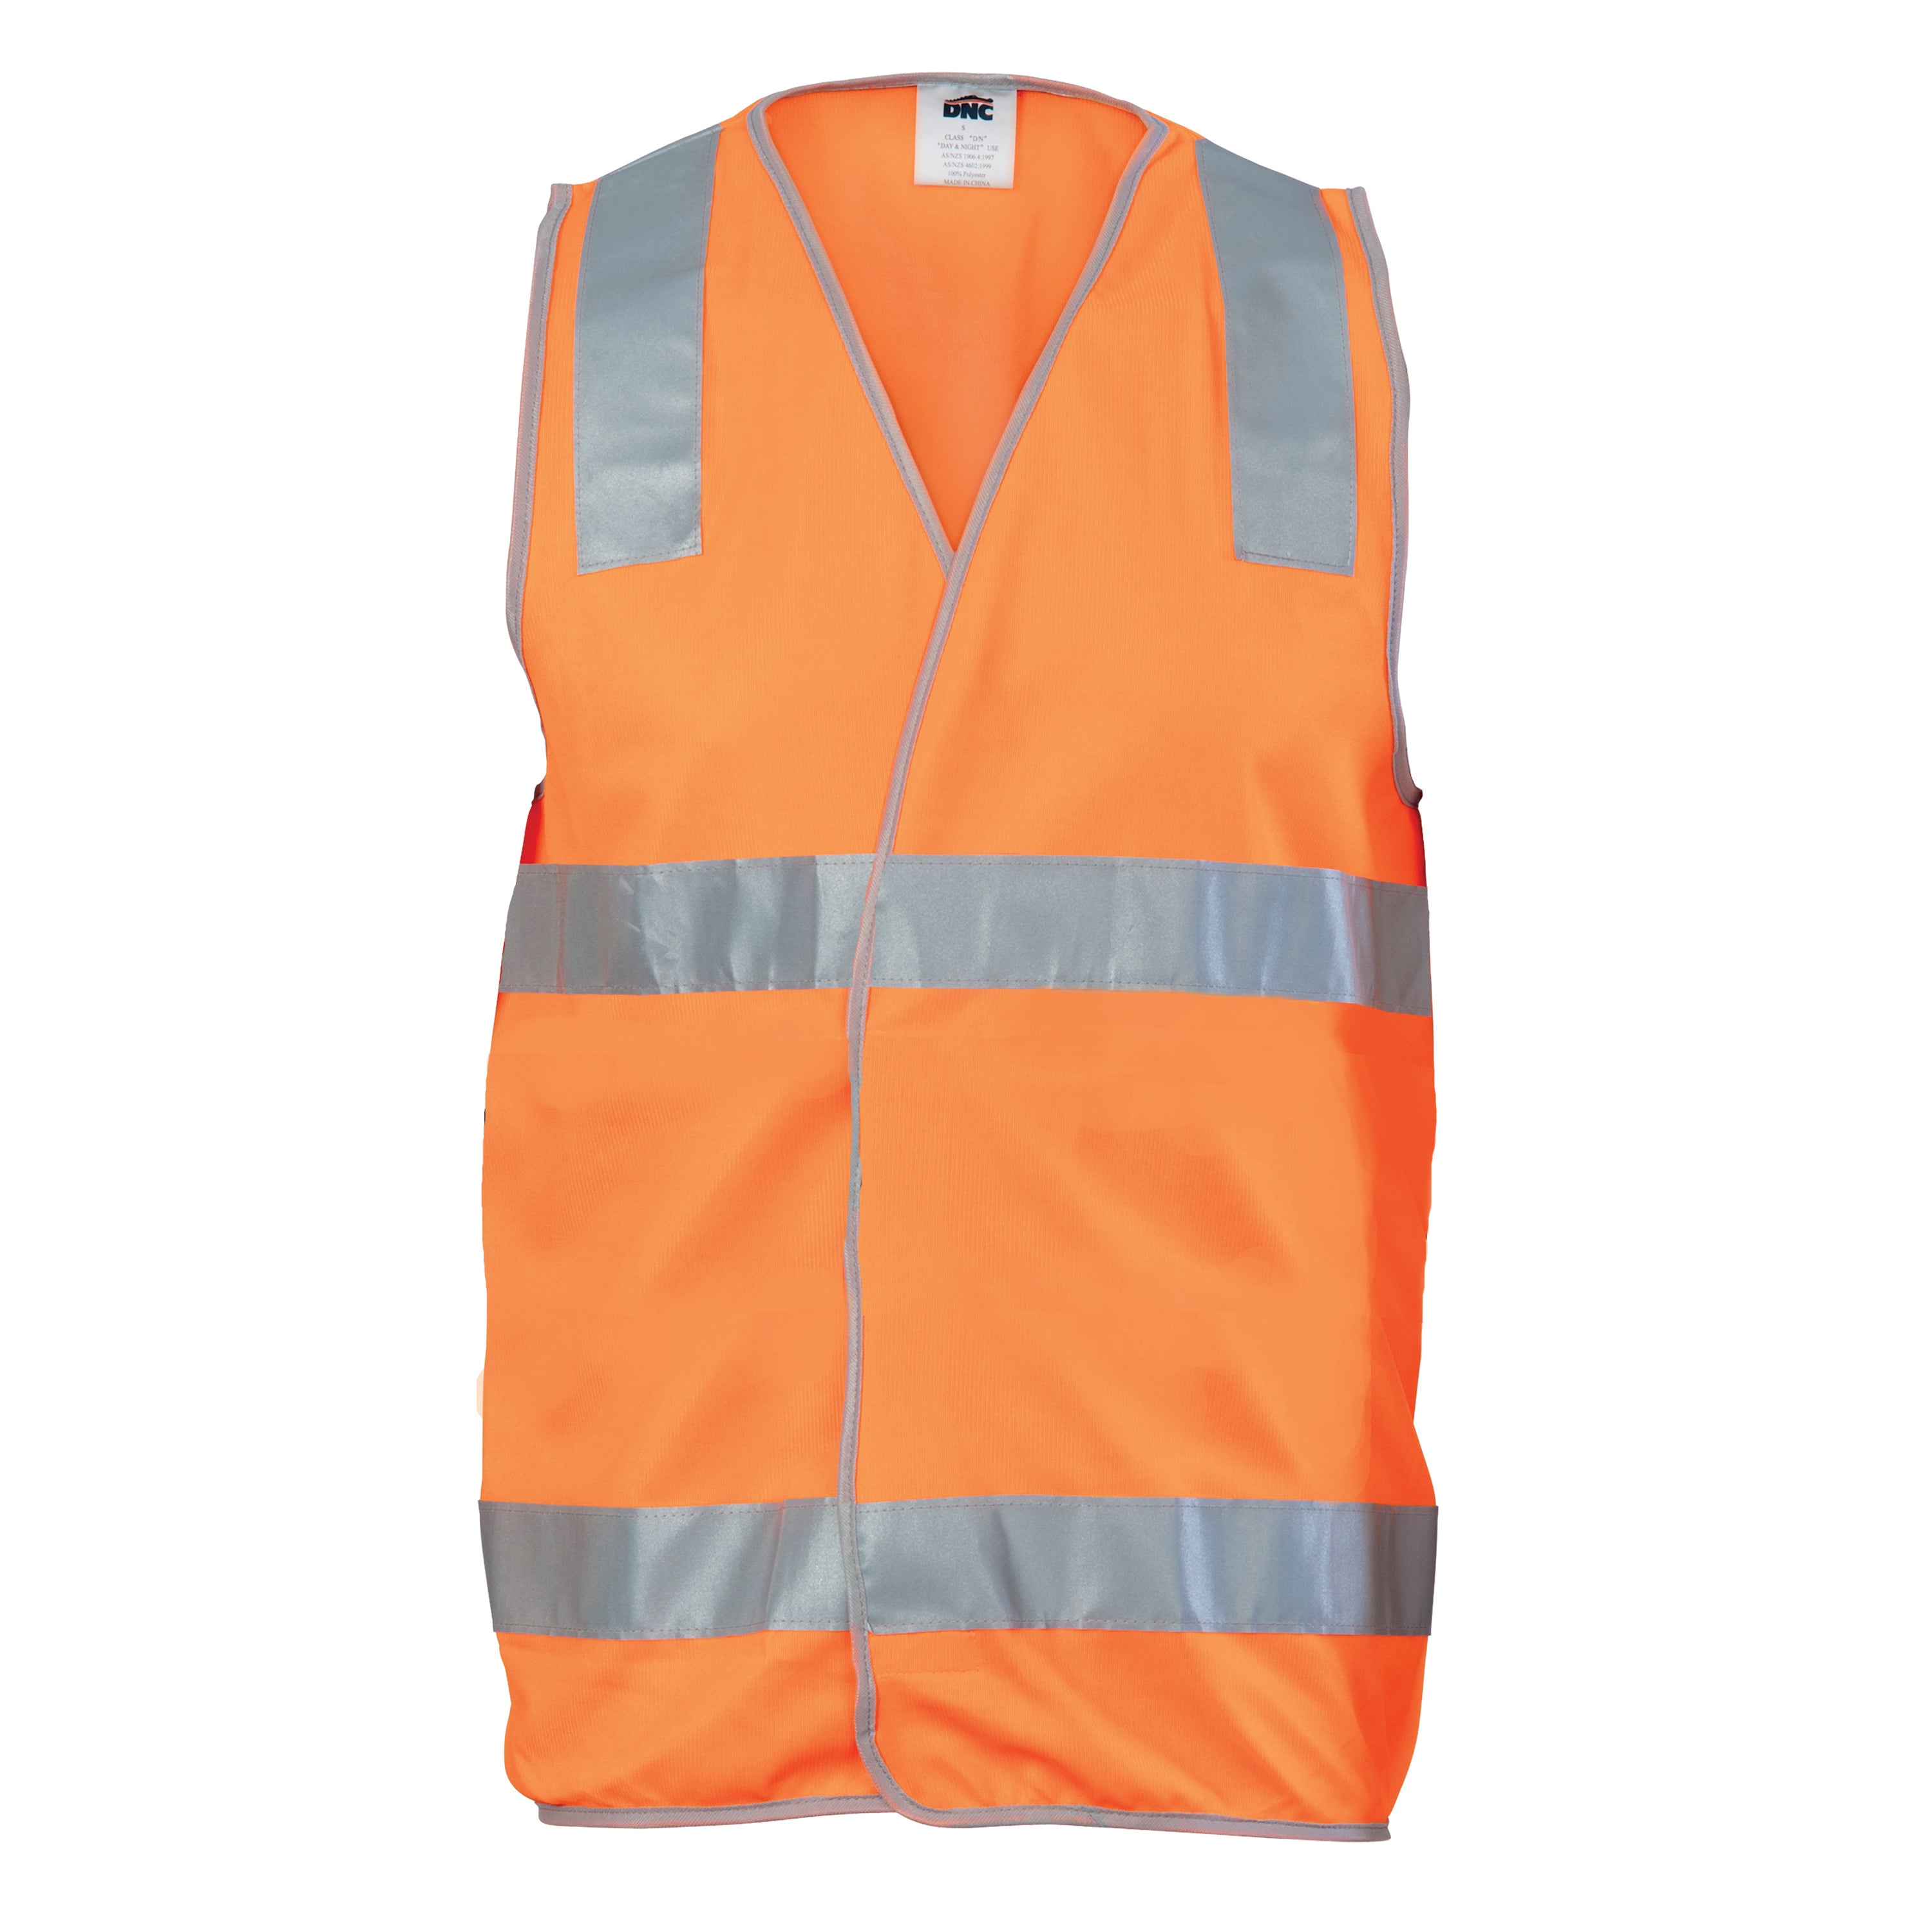 DNC Hi-Vis Safety Vest with G-Tape